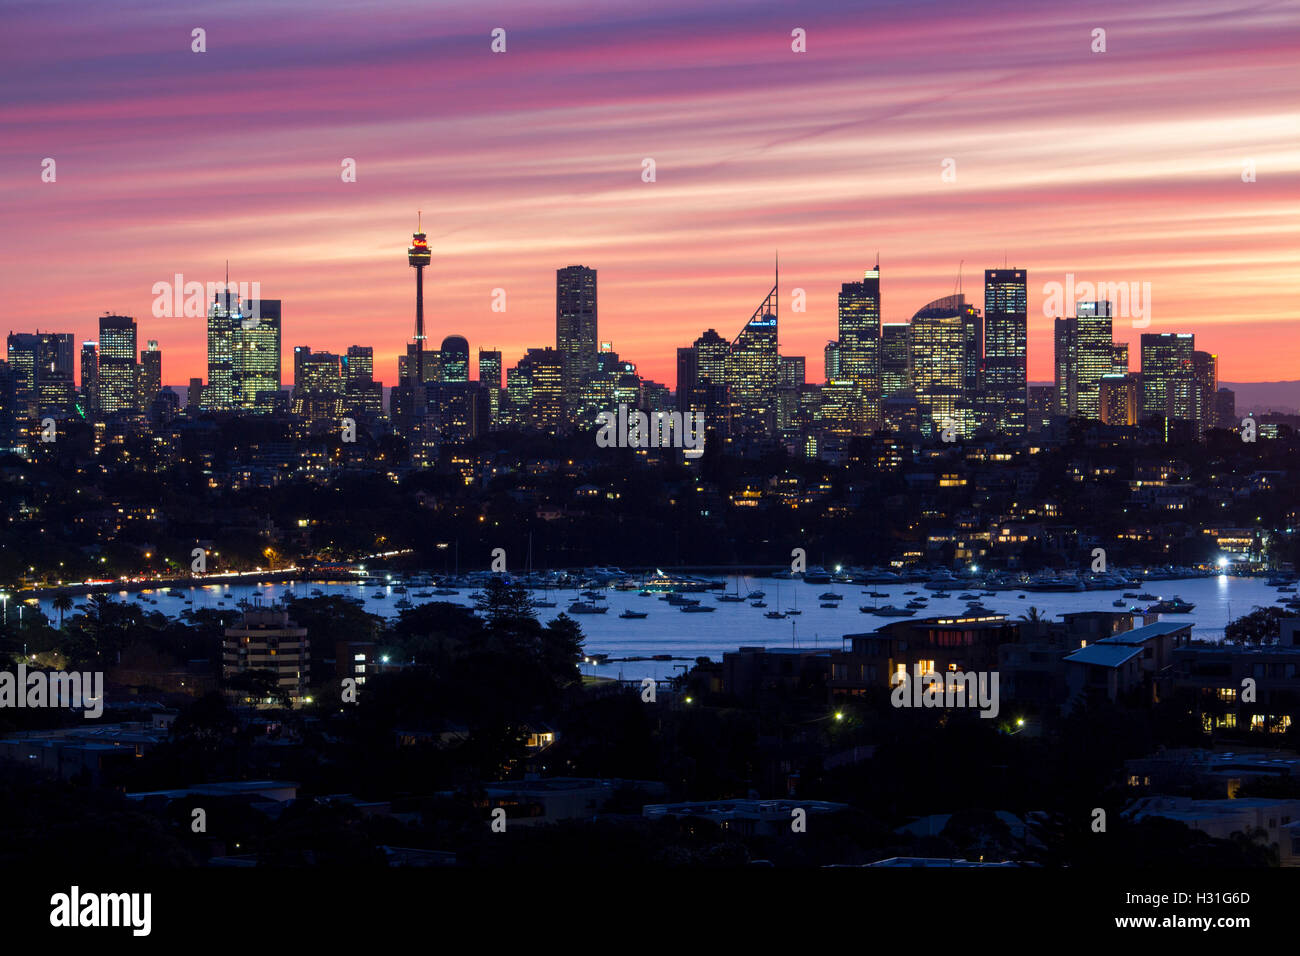 Ville de Sydney CBD skyline at sunset nuit tombée de Sydney , Australie Banque D'Images